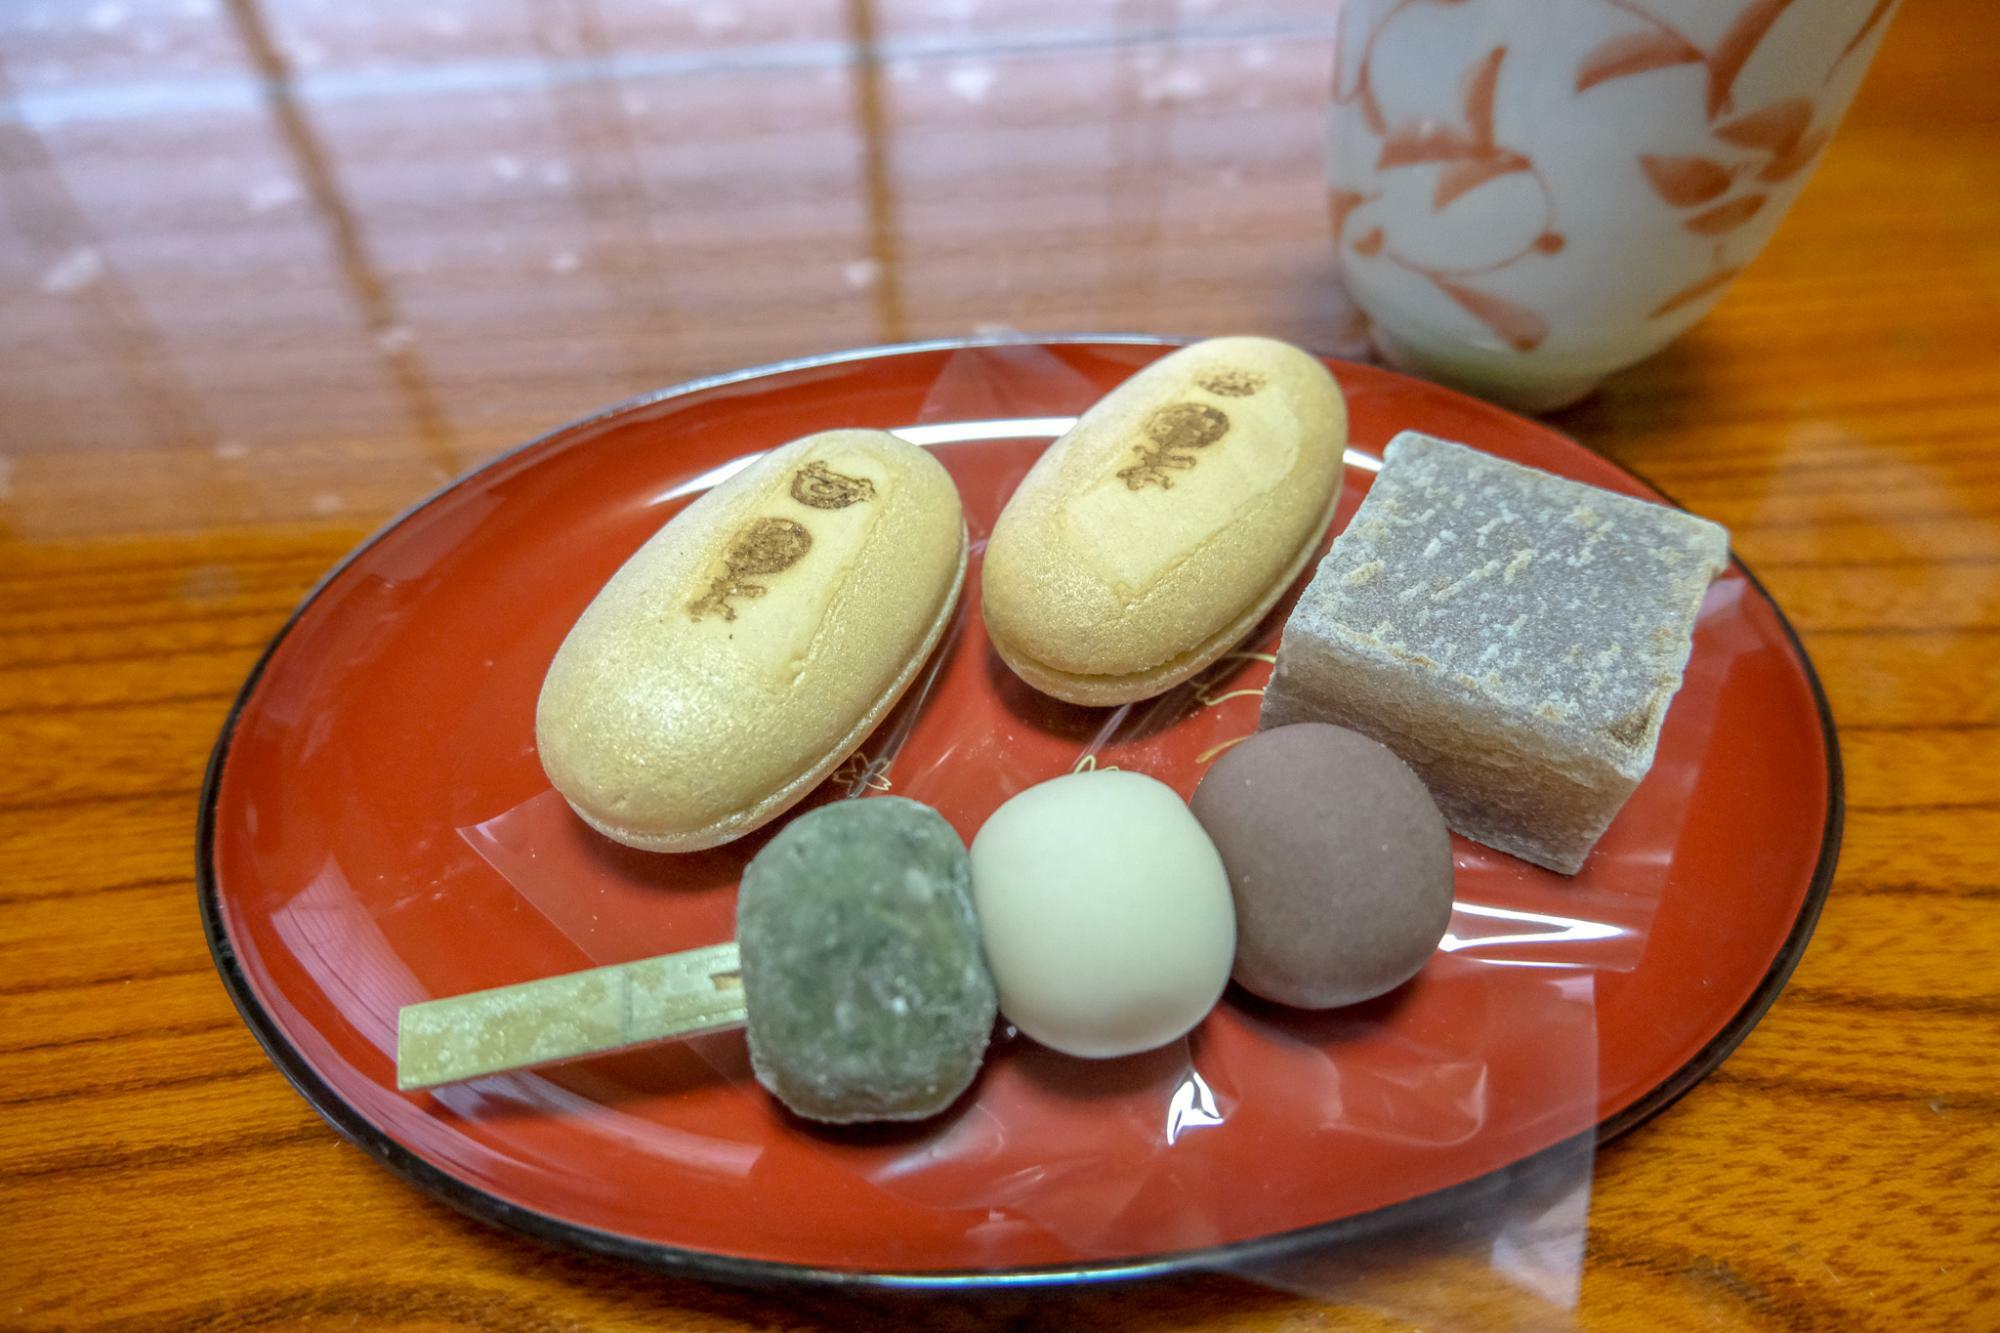 和菓子でお茶タイム。和菓子と緑茶は落ち着きます。